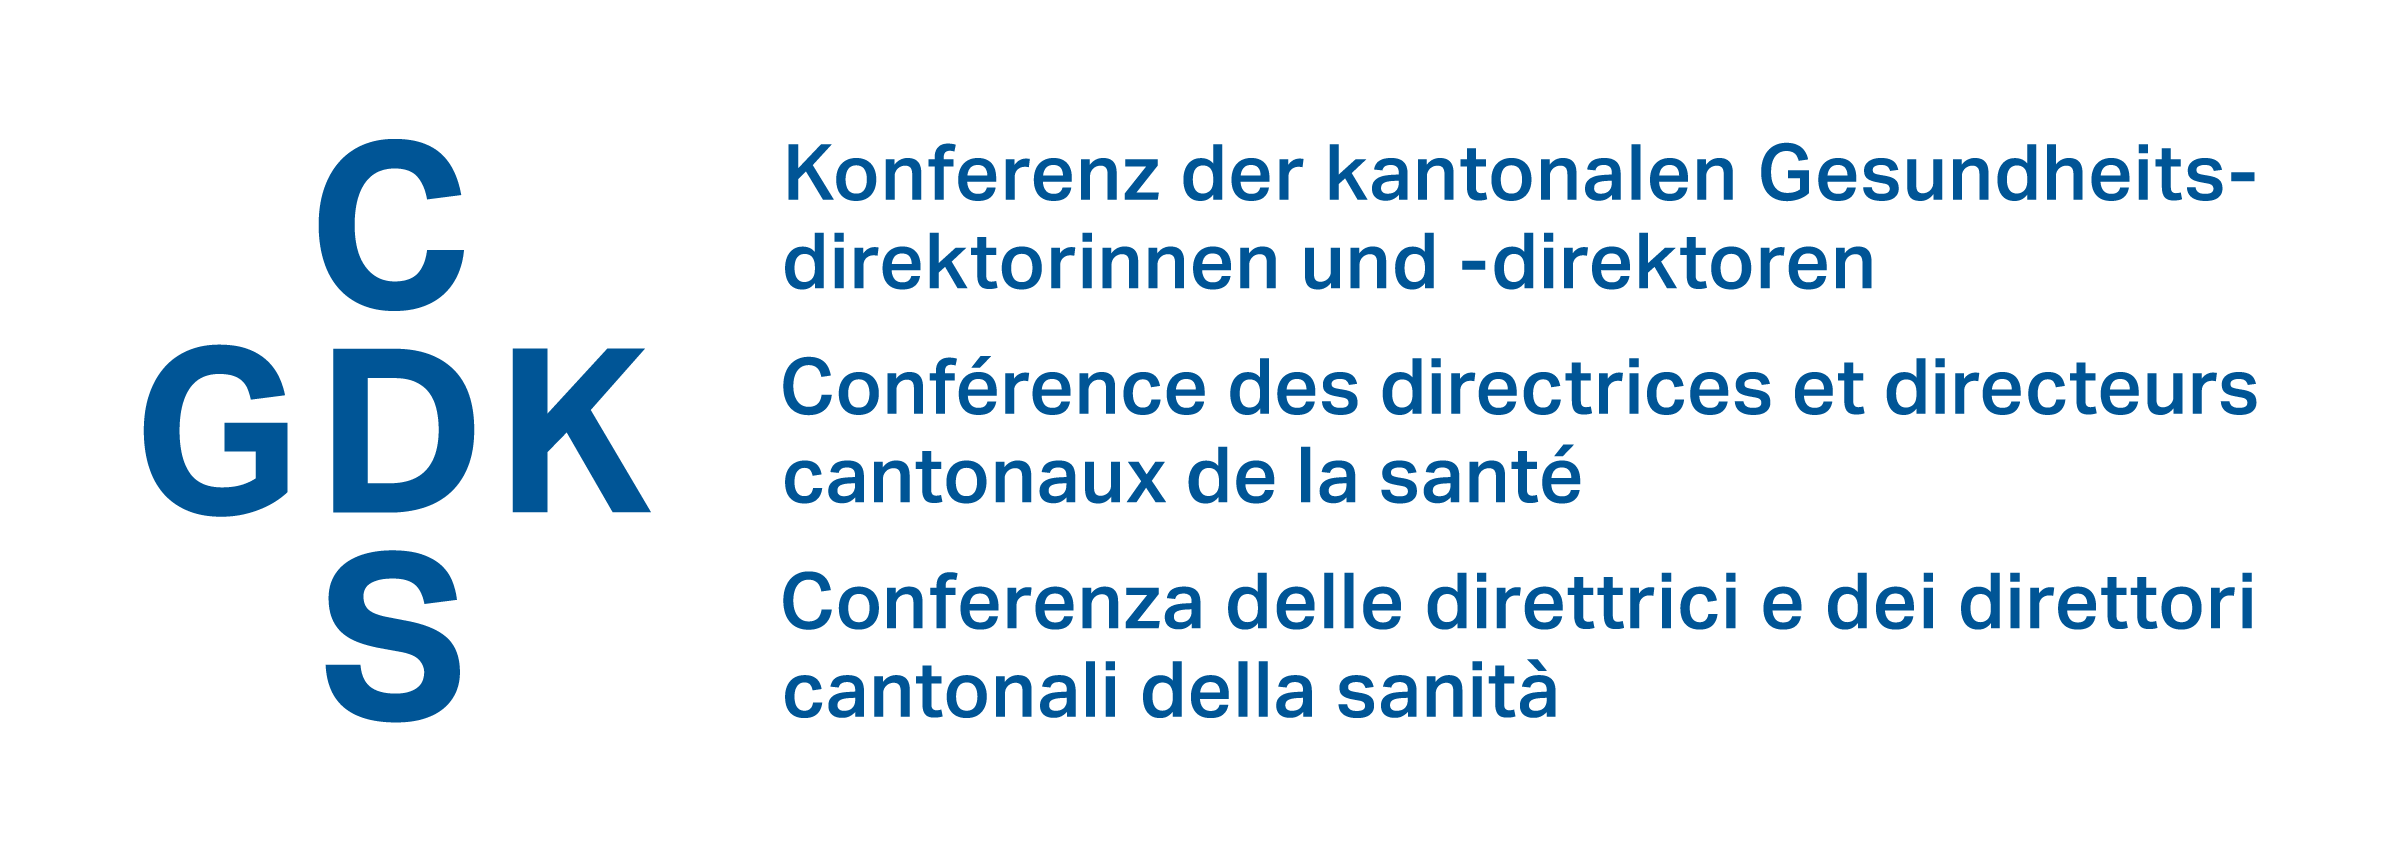 Schweizerische Gesundheitsdirektorenkonferenz